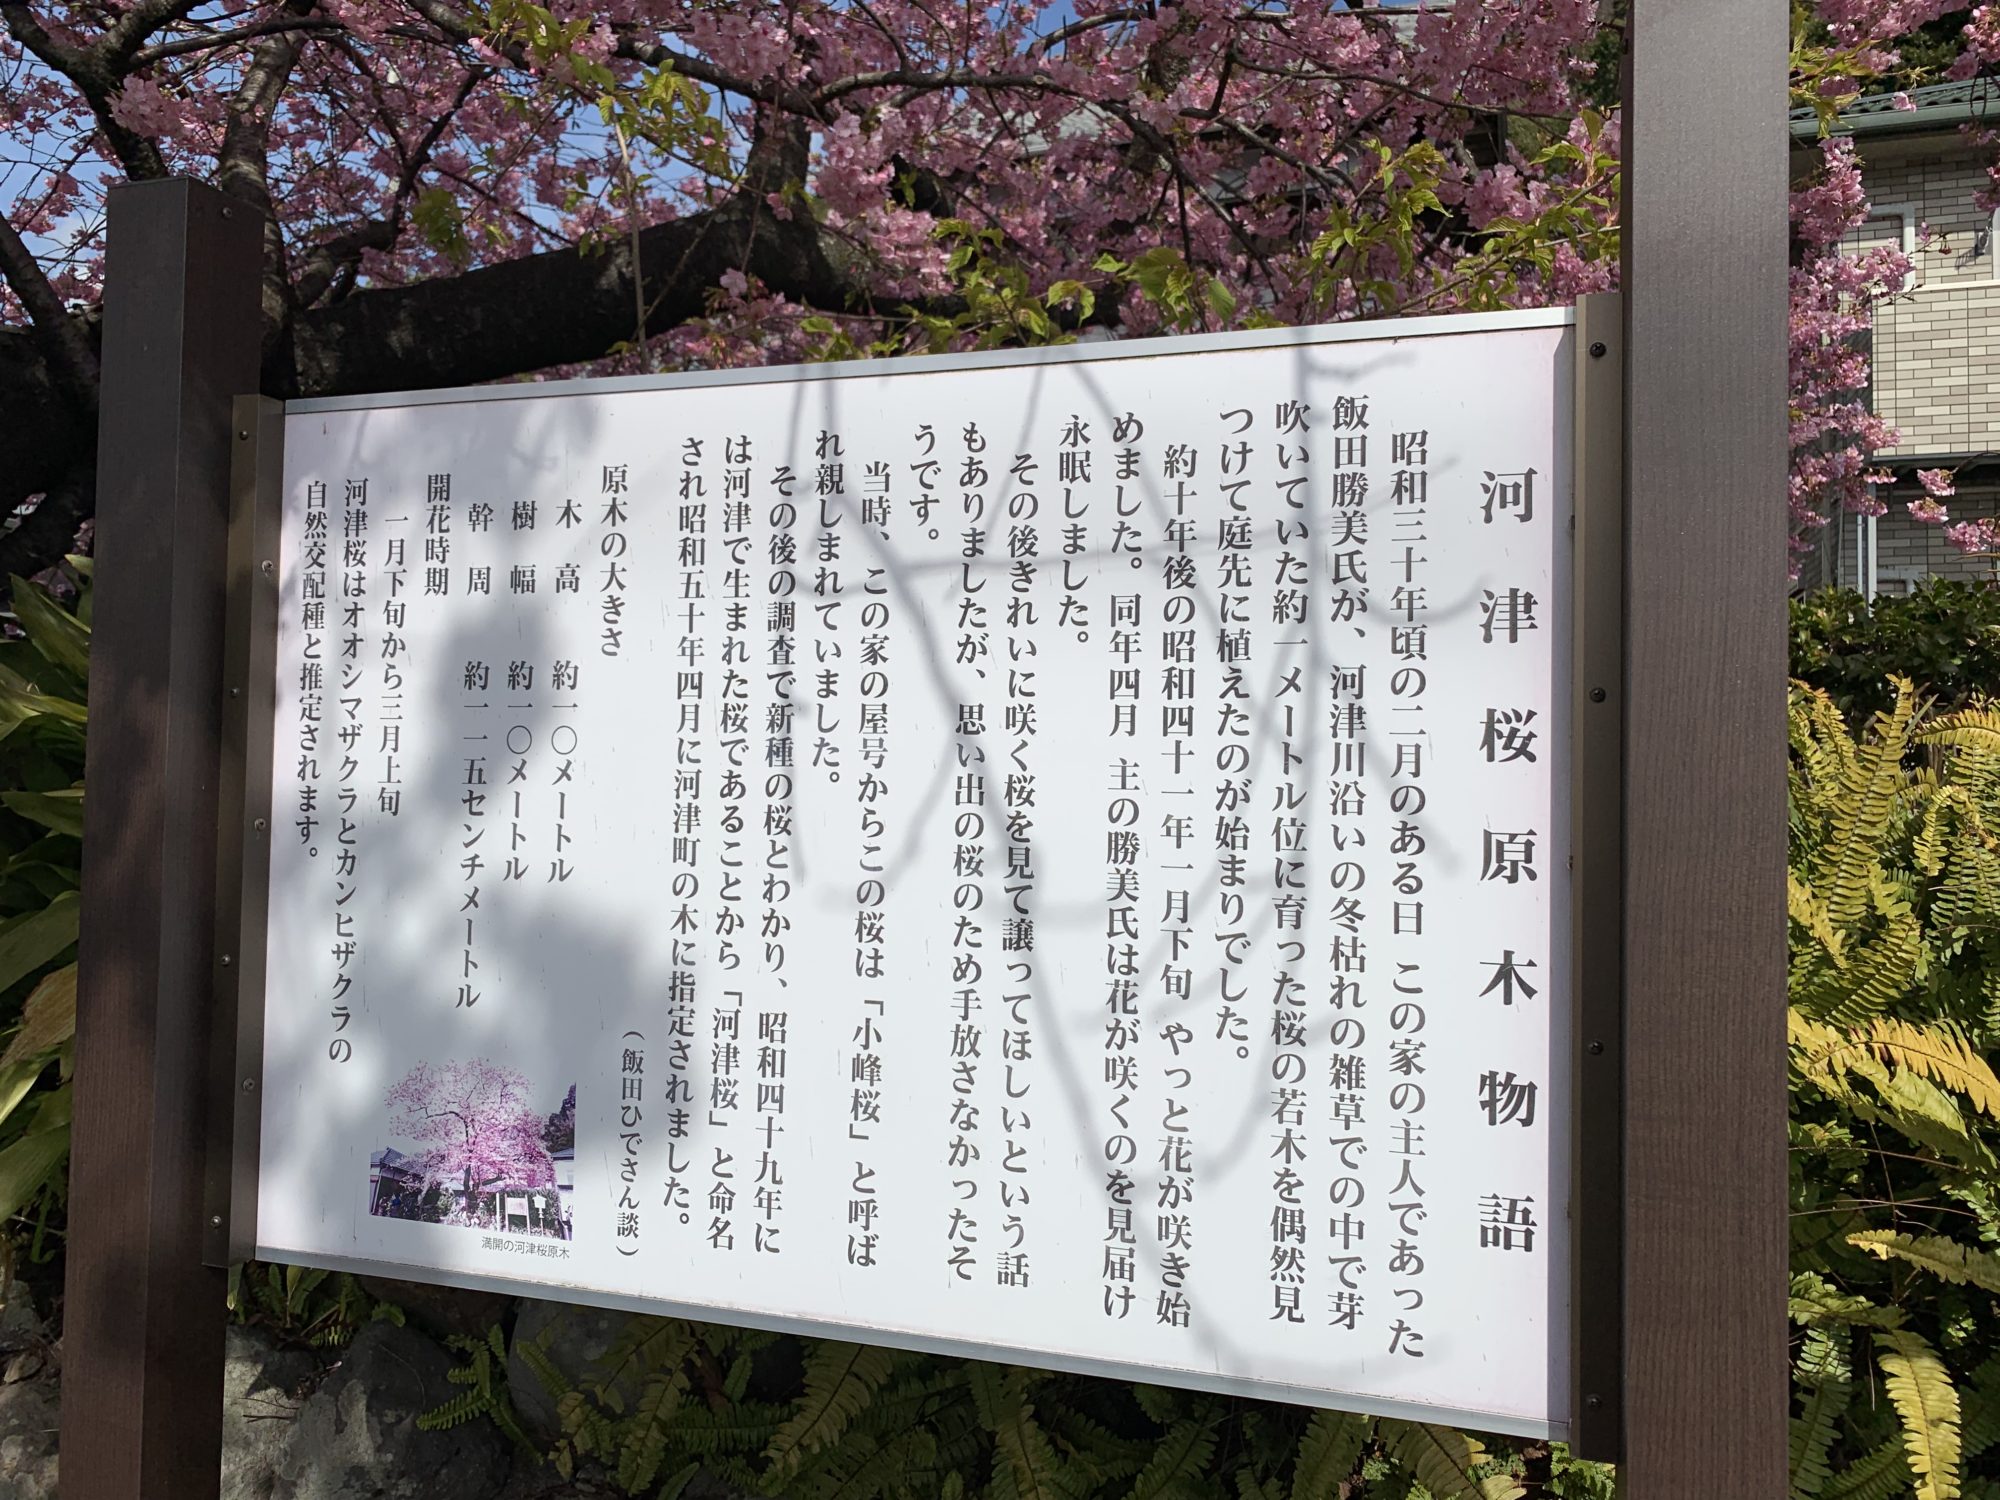 た の 苗 が の 河津 は 原木 見つかっ 桜 静岡県の巨木 河津桜の原木